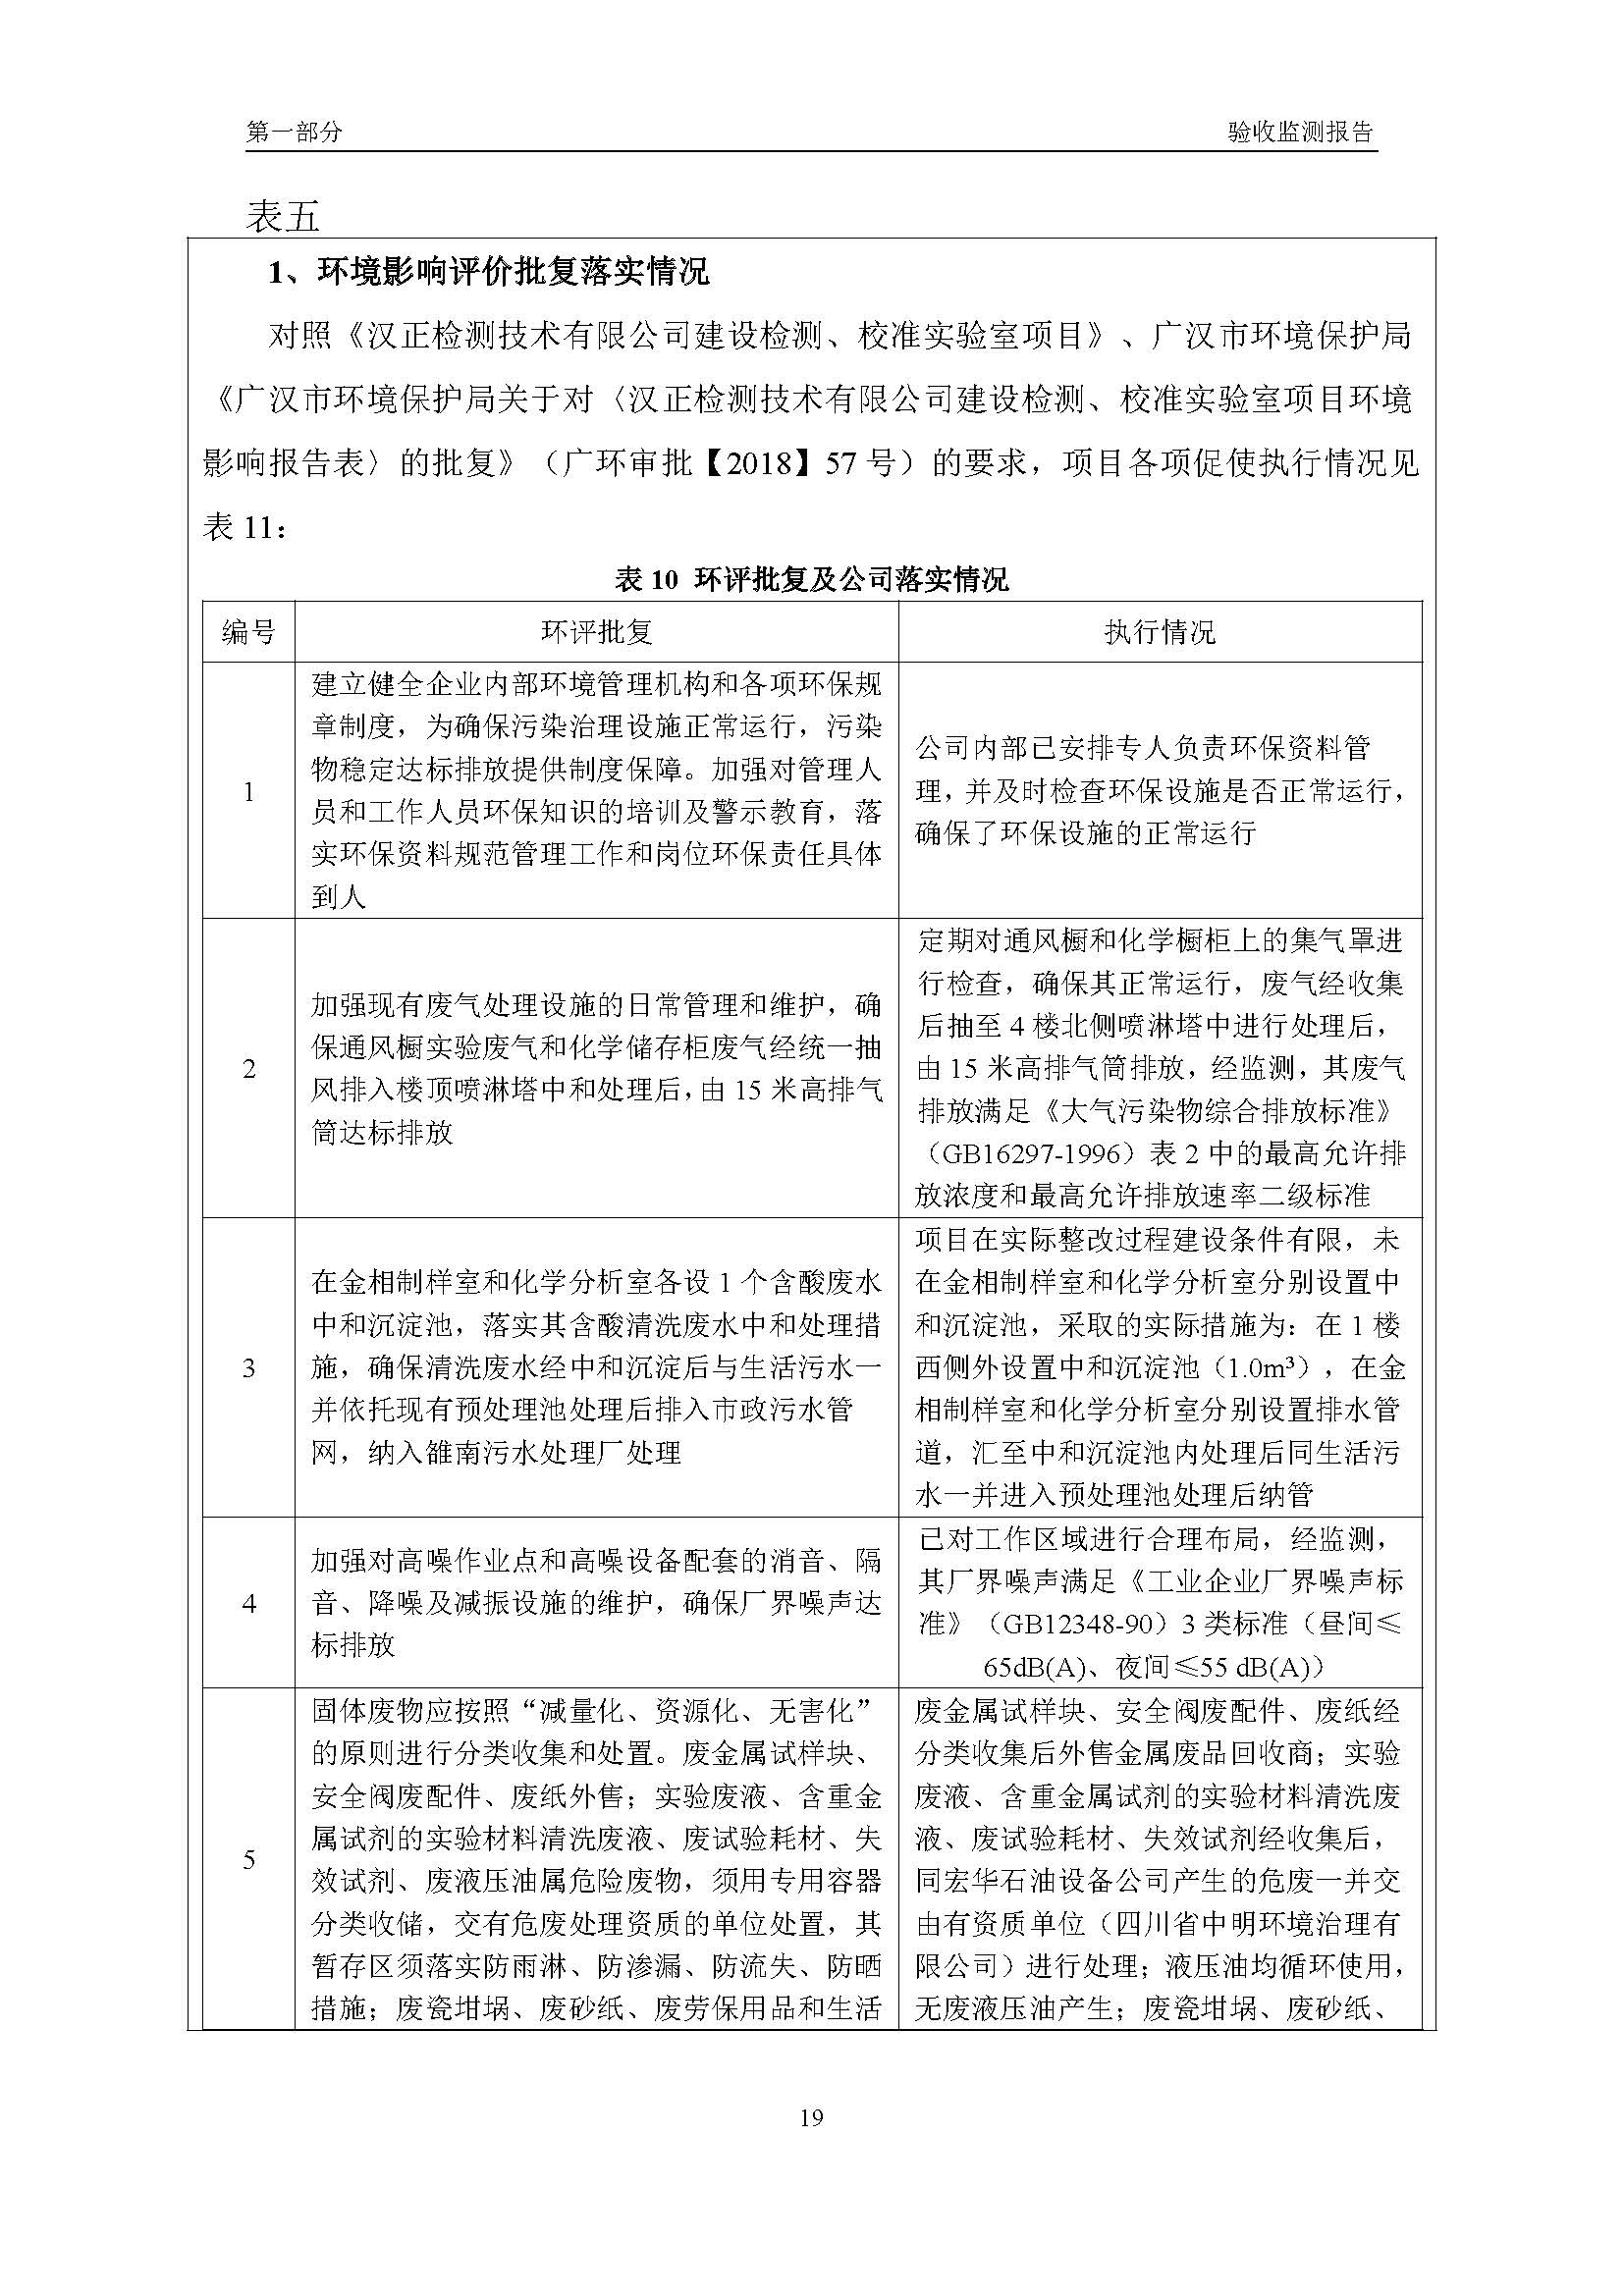 汉正检测环评验收报告 2018.05.31_页面_21.jpg